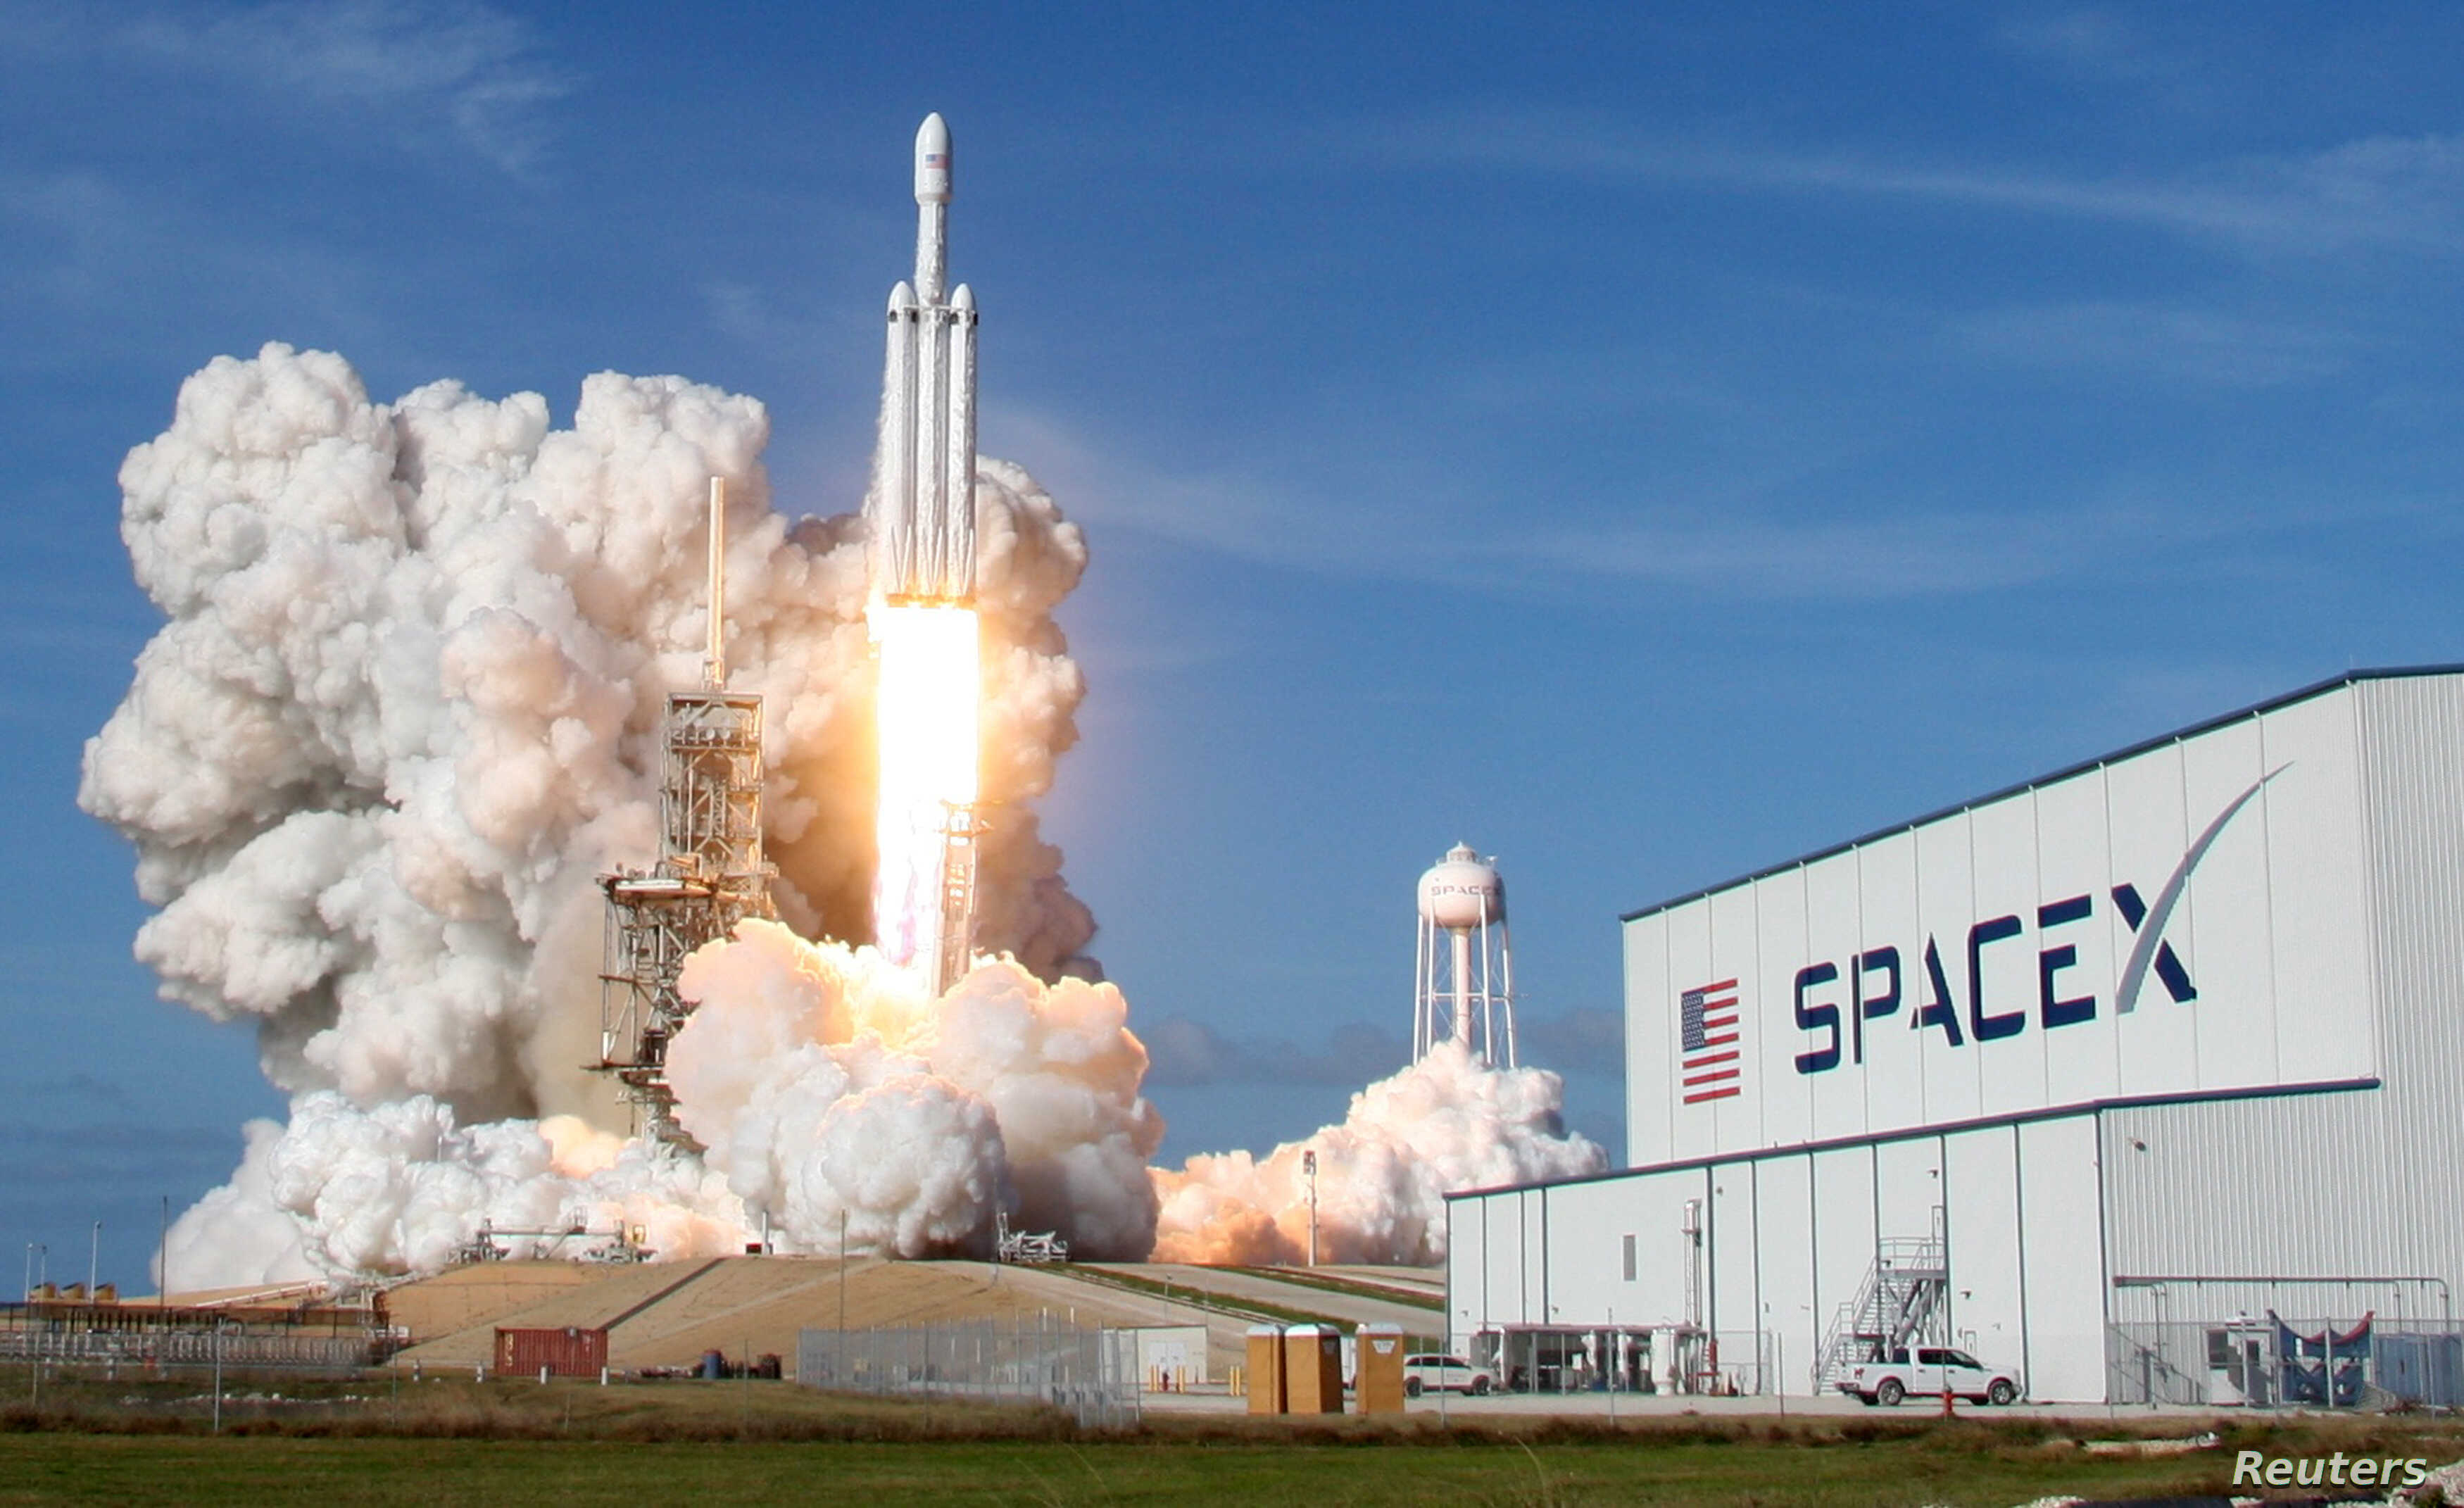 เว็บไซต์ SpaceX สร้างกิจกรรมระดับจักรวาล ให้คนทั่วไปลอง 'บังคับยานอวกาศ'  ที่บ้านในช่วงกักตัว